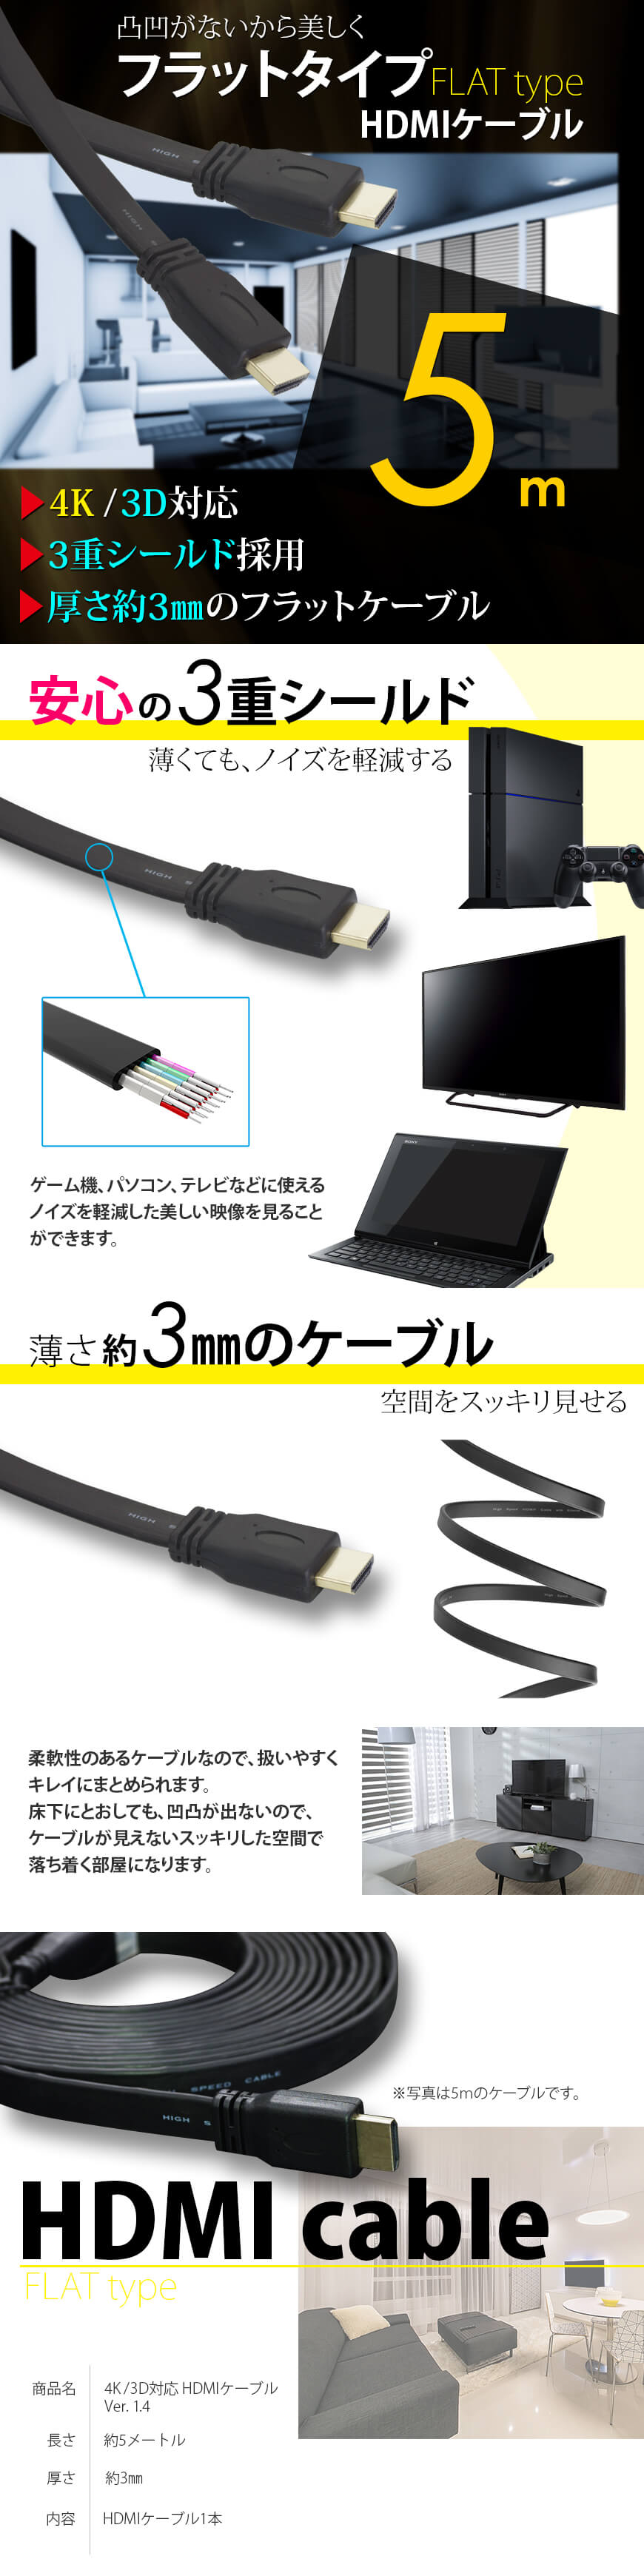 HDMIケーブル 薄型 スリム フラット 5m 5メートル 4K 3D/フルハイビジョン 送料無料 :LBS-HDMI5:ライトニングブースS -  通販 - Yahoo!ショッピング